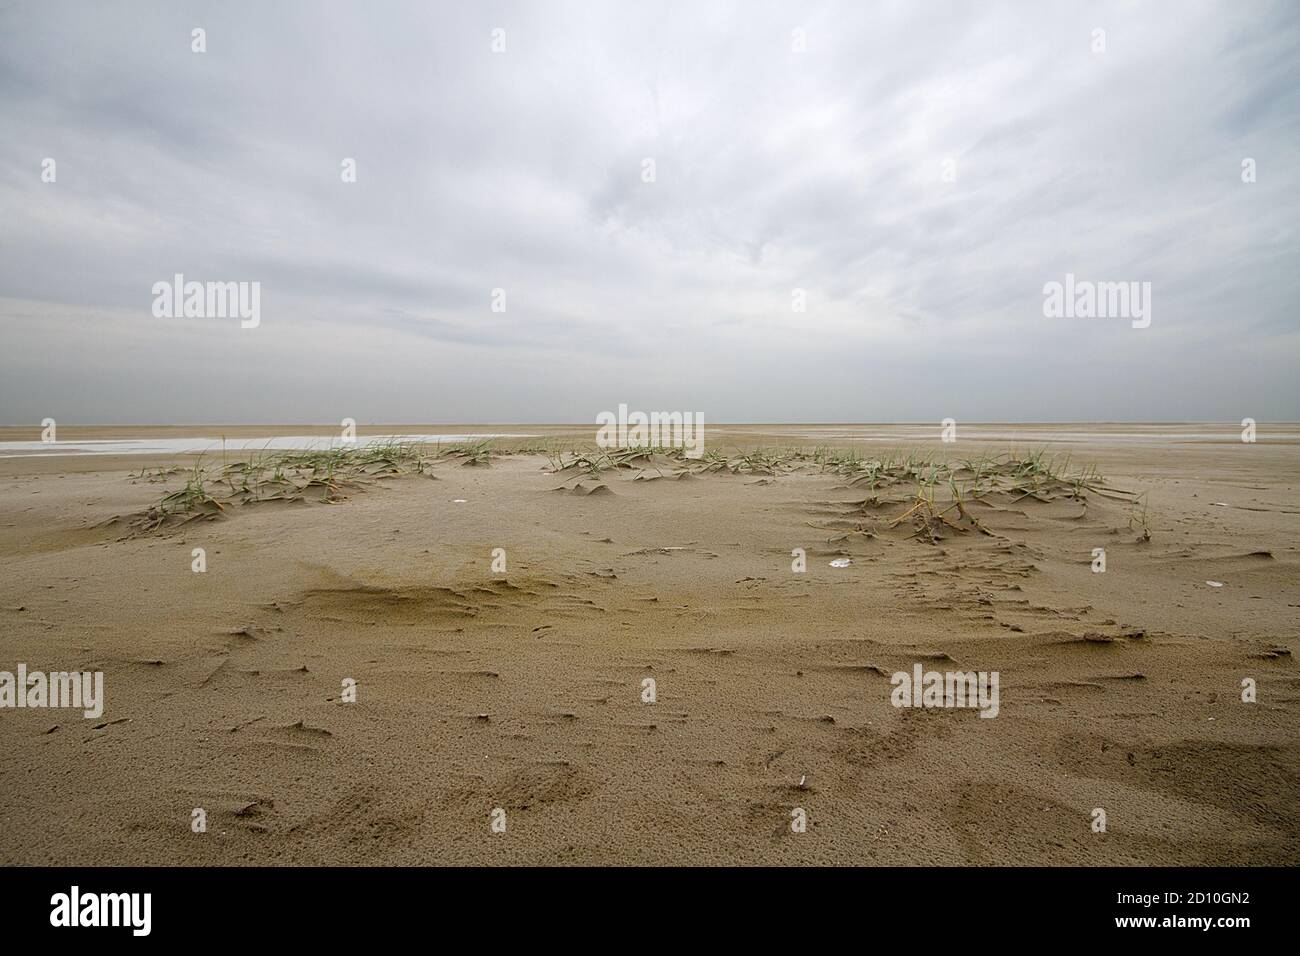 Dünenbildung an einem stürmischen Strand: Sand Couchgras fängt Sand und bildet embryonale Dünen unter einem dunklen, bedrohlichen Himmel Stockfoto